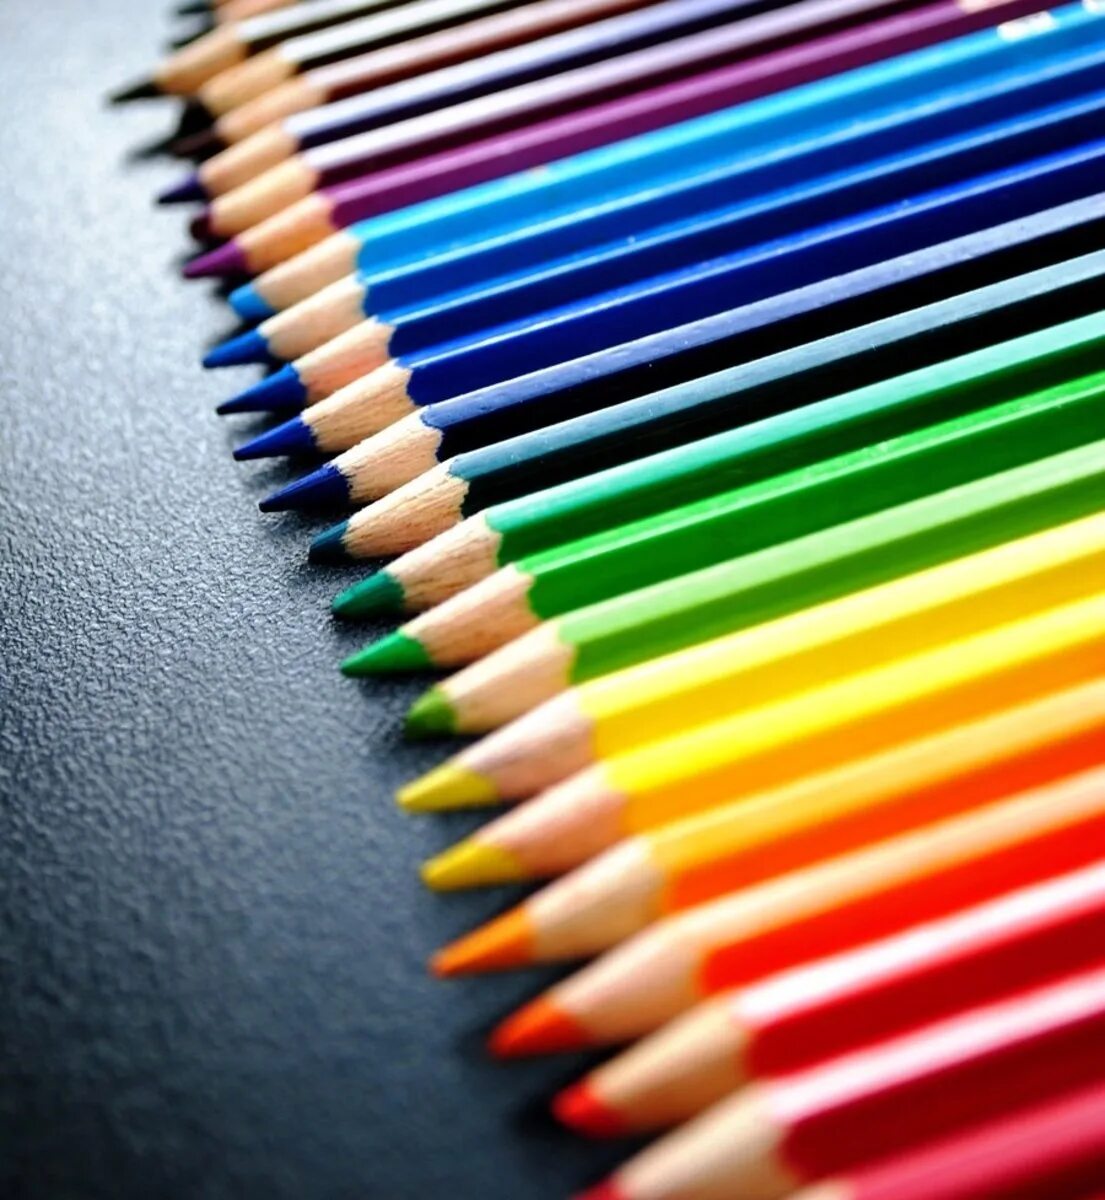 Названия цветов карандашей. Карандаши цветные. Яркие карандаши. Цвета карандашей. Красивые цветные карандаши.